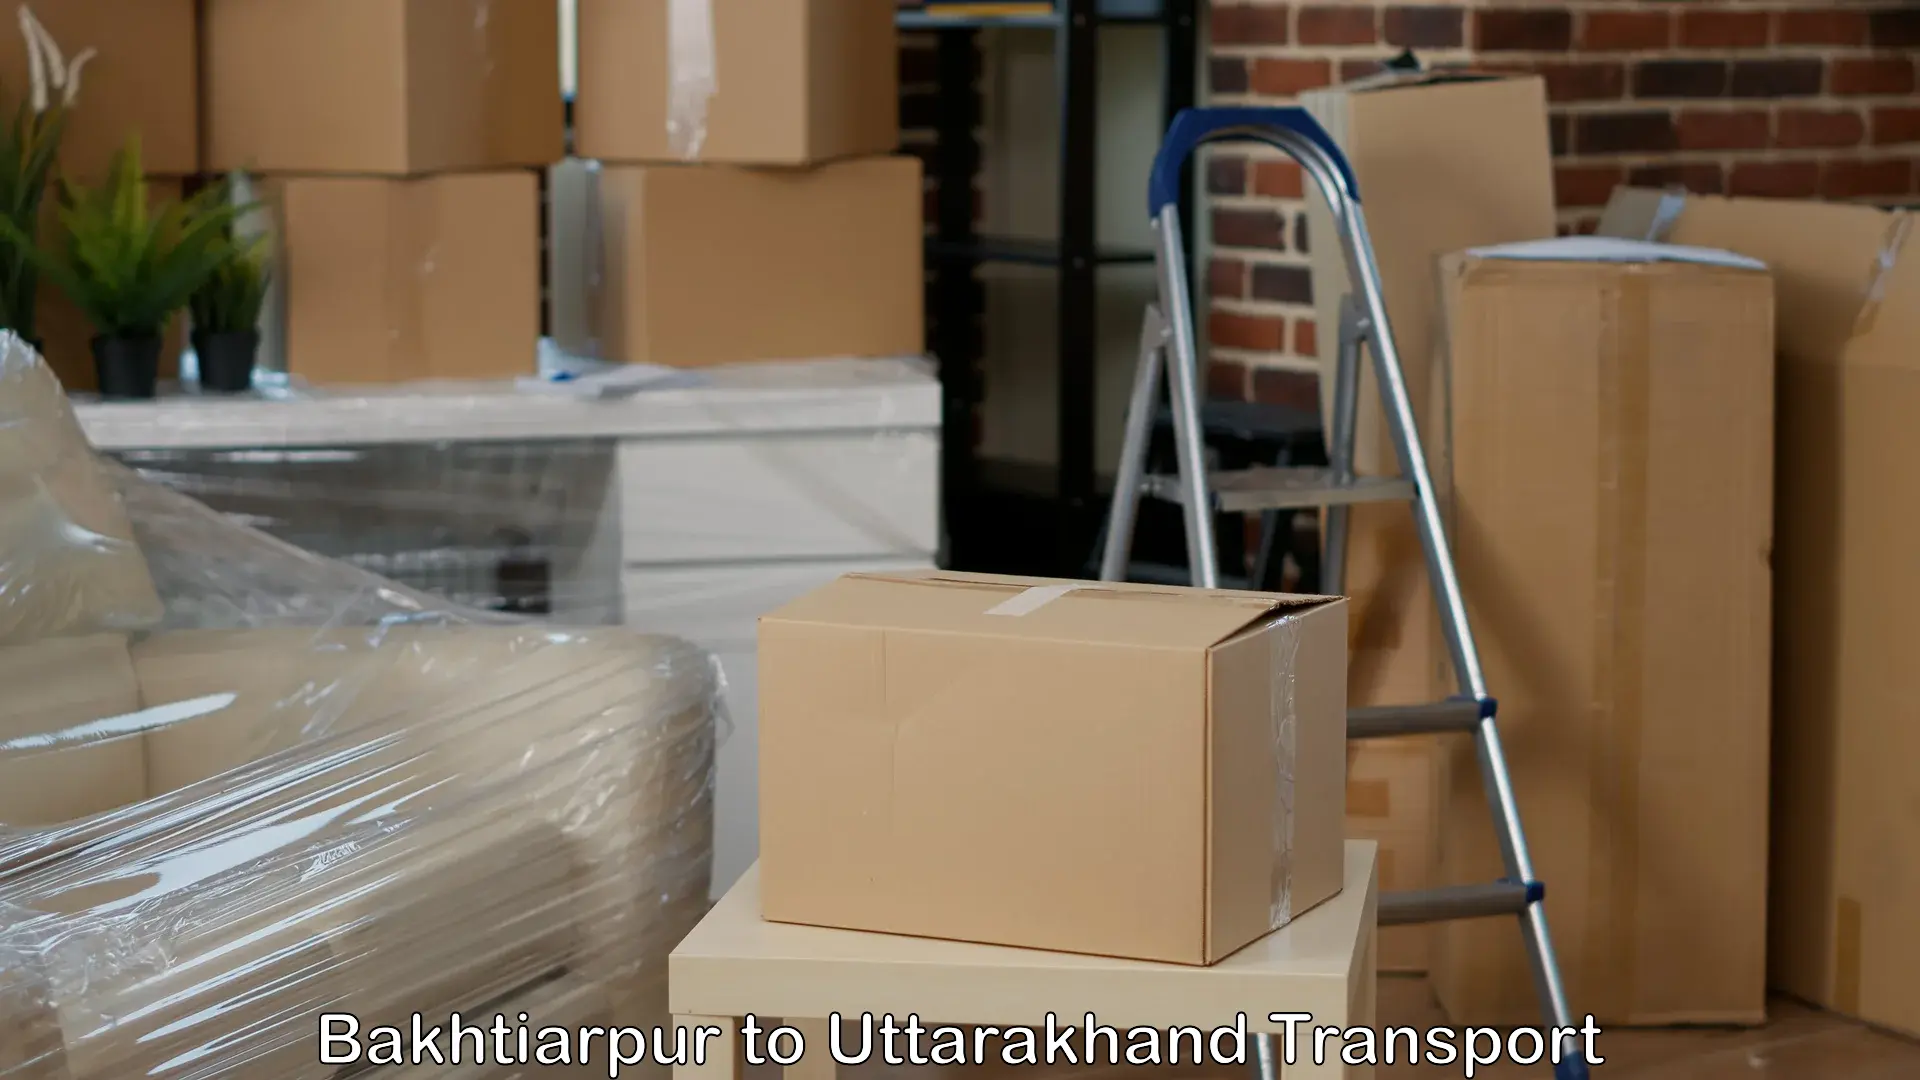 Cargo transport services Bakhtiarpur to Nainital